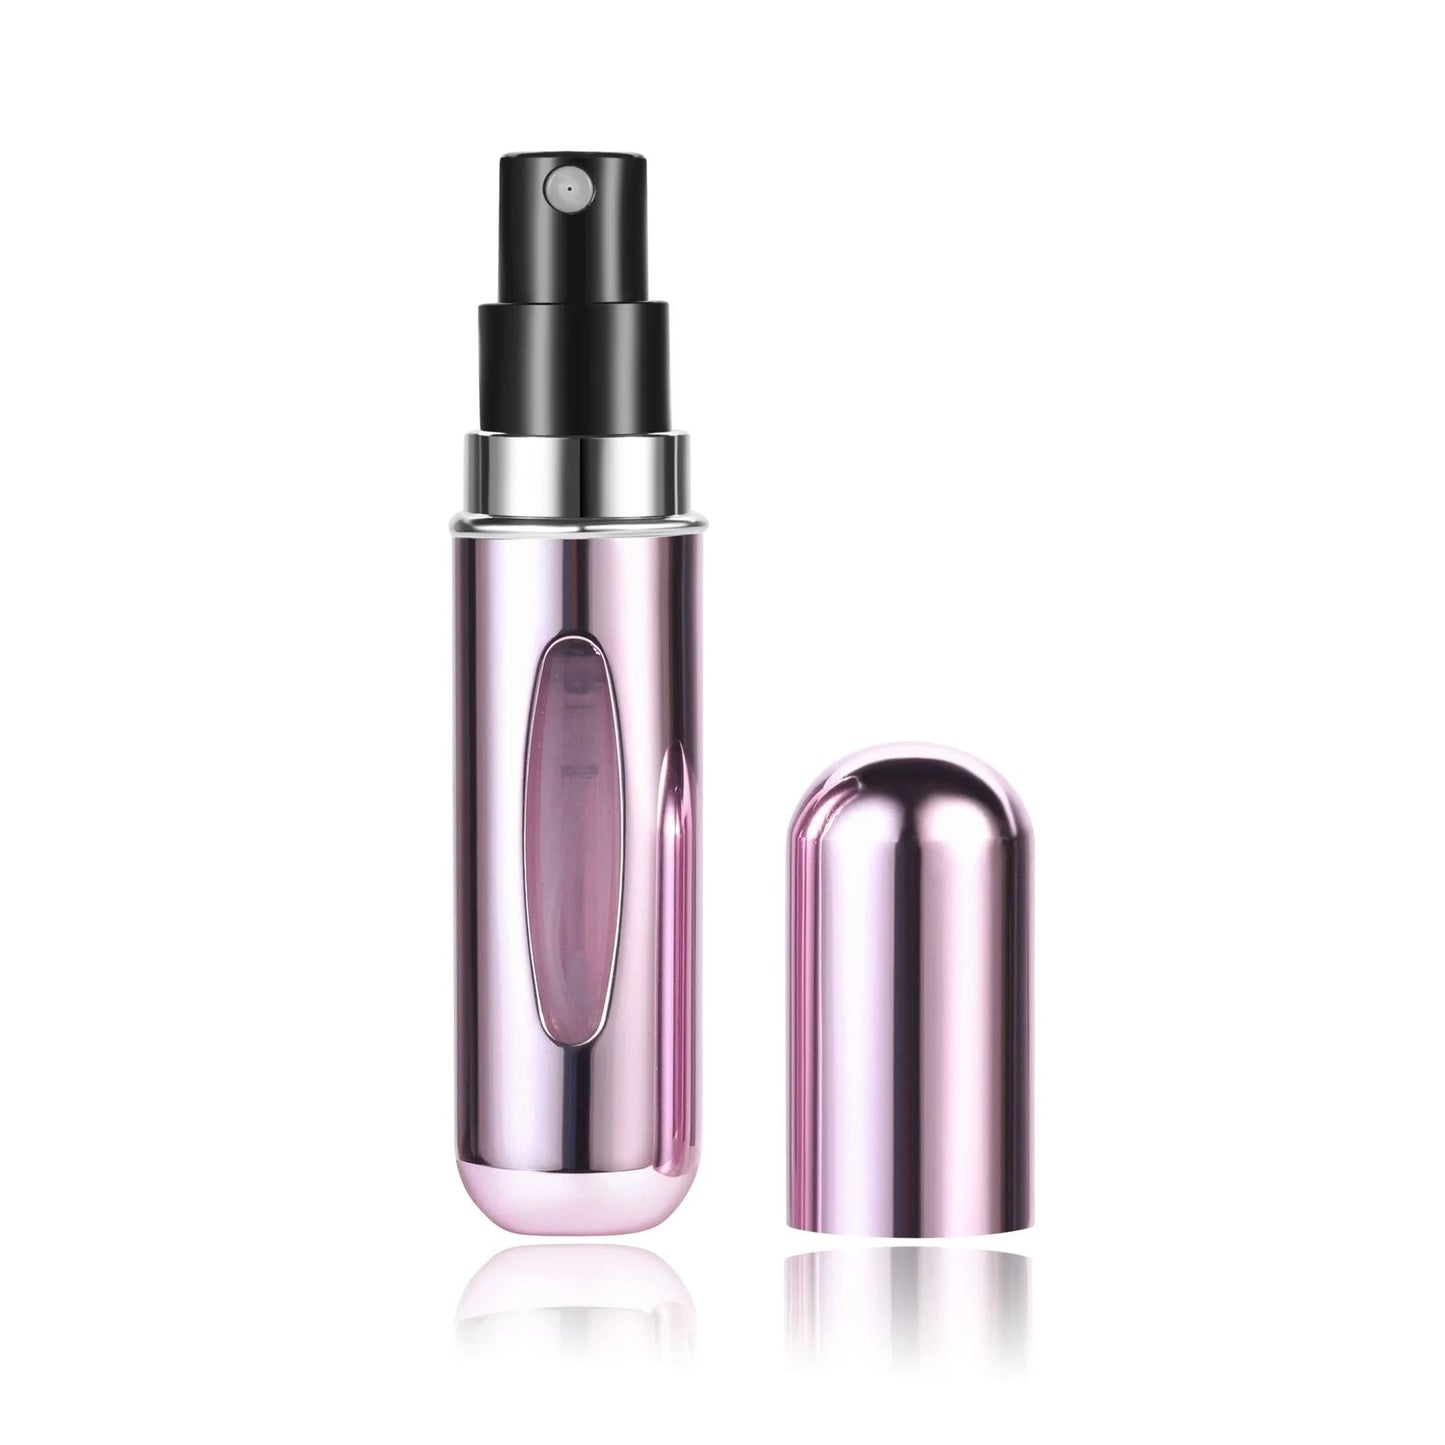 5ml Perfume Refill Bottle